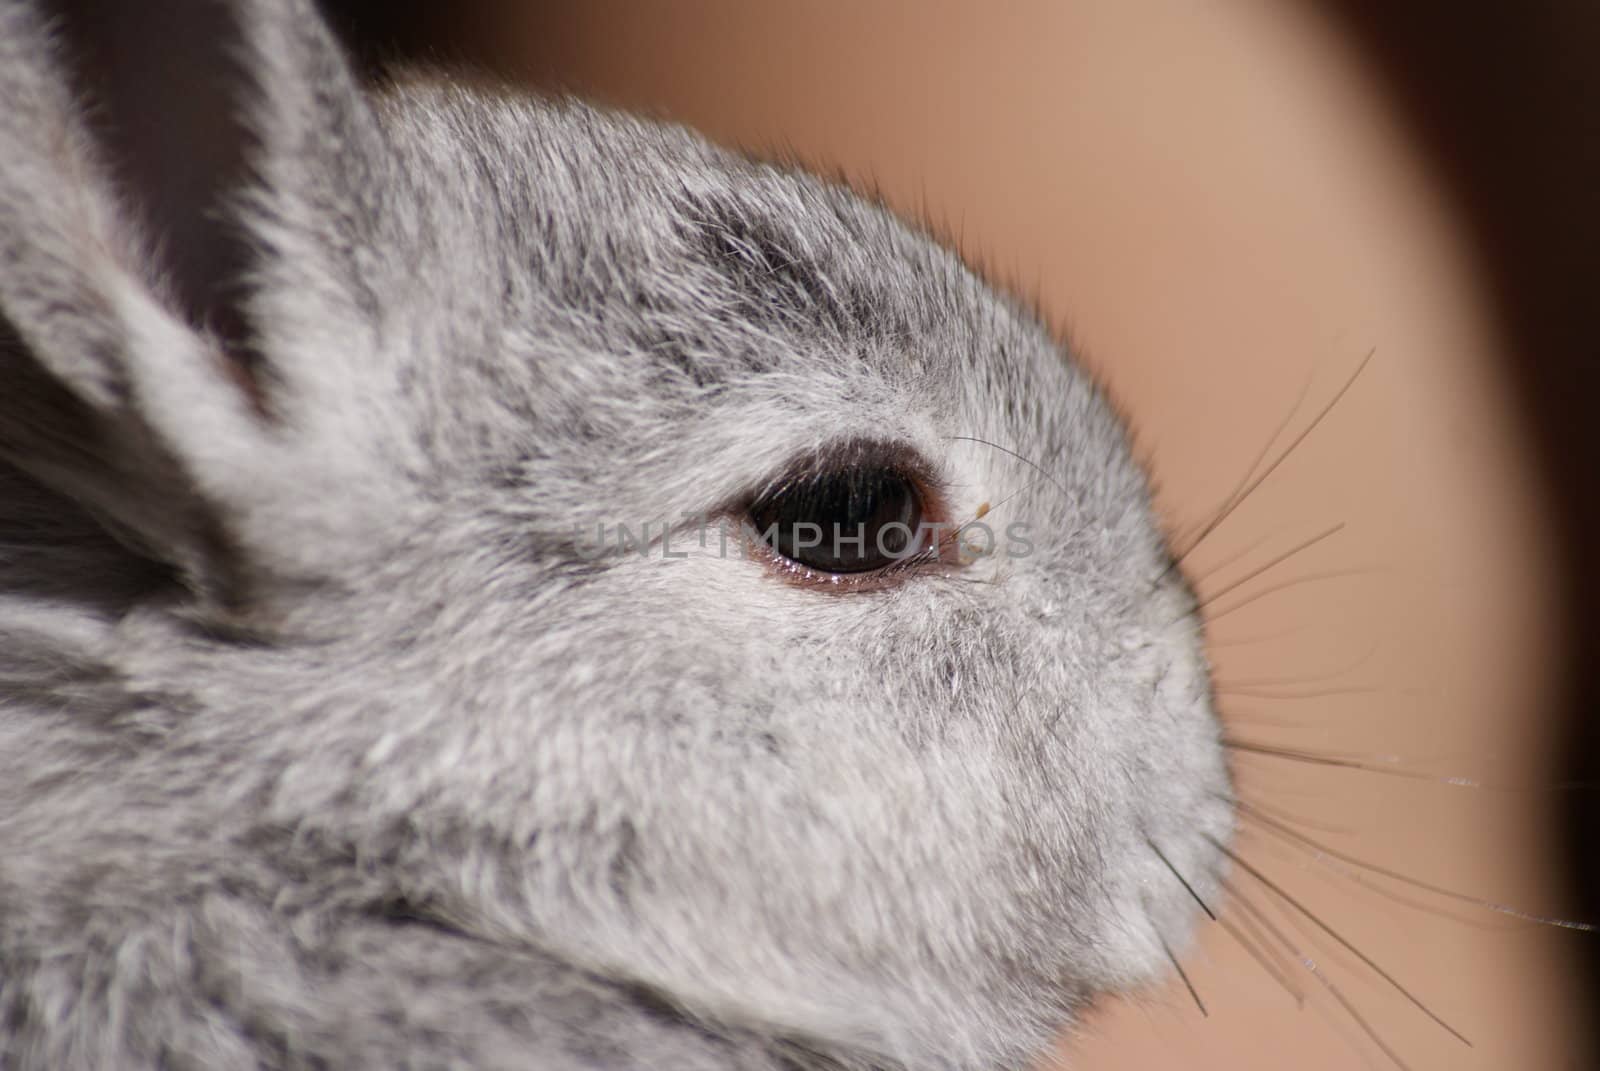 Nice rabbit looking at the camera